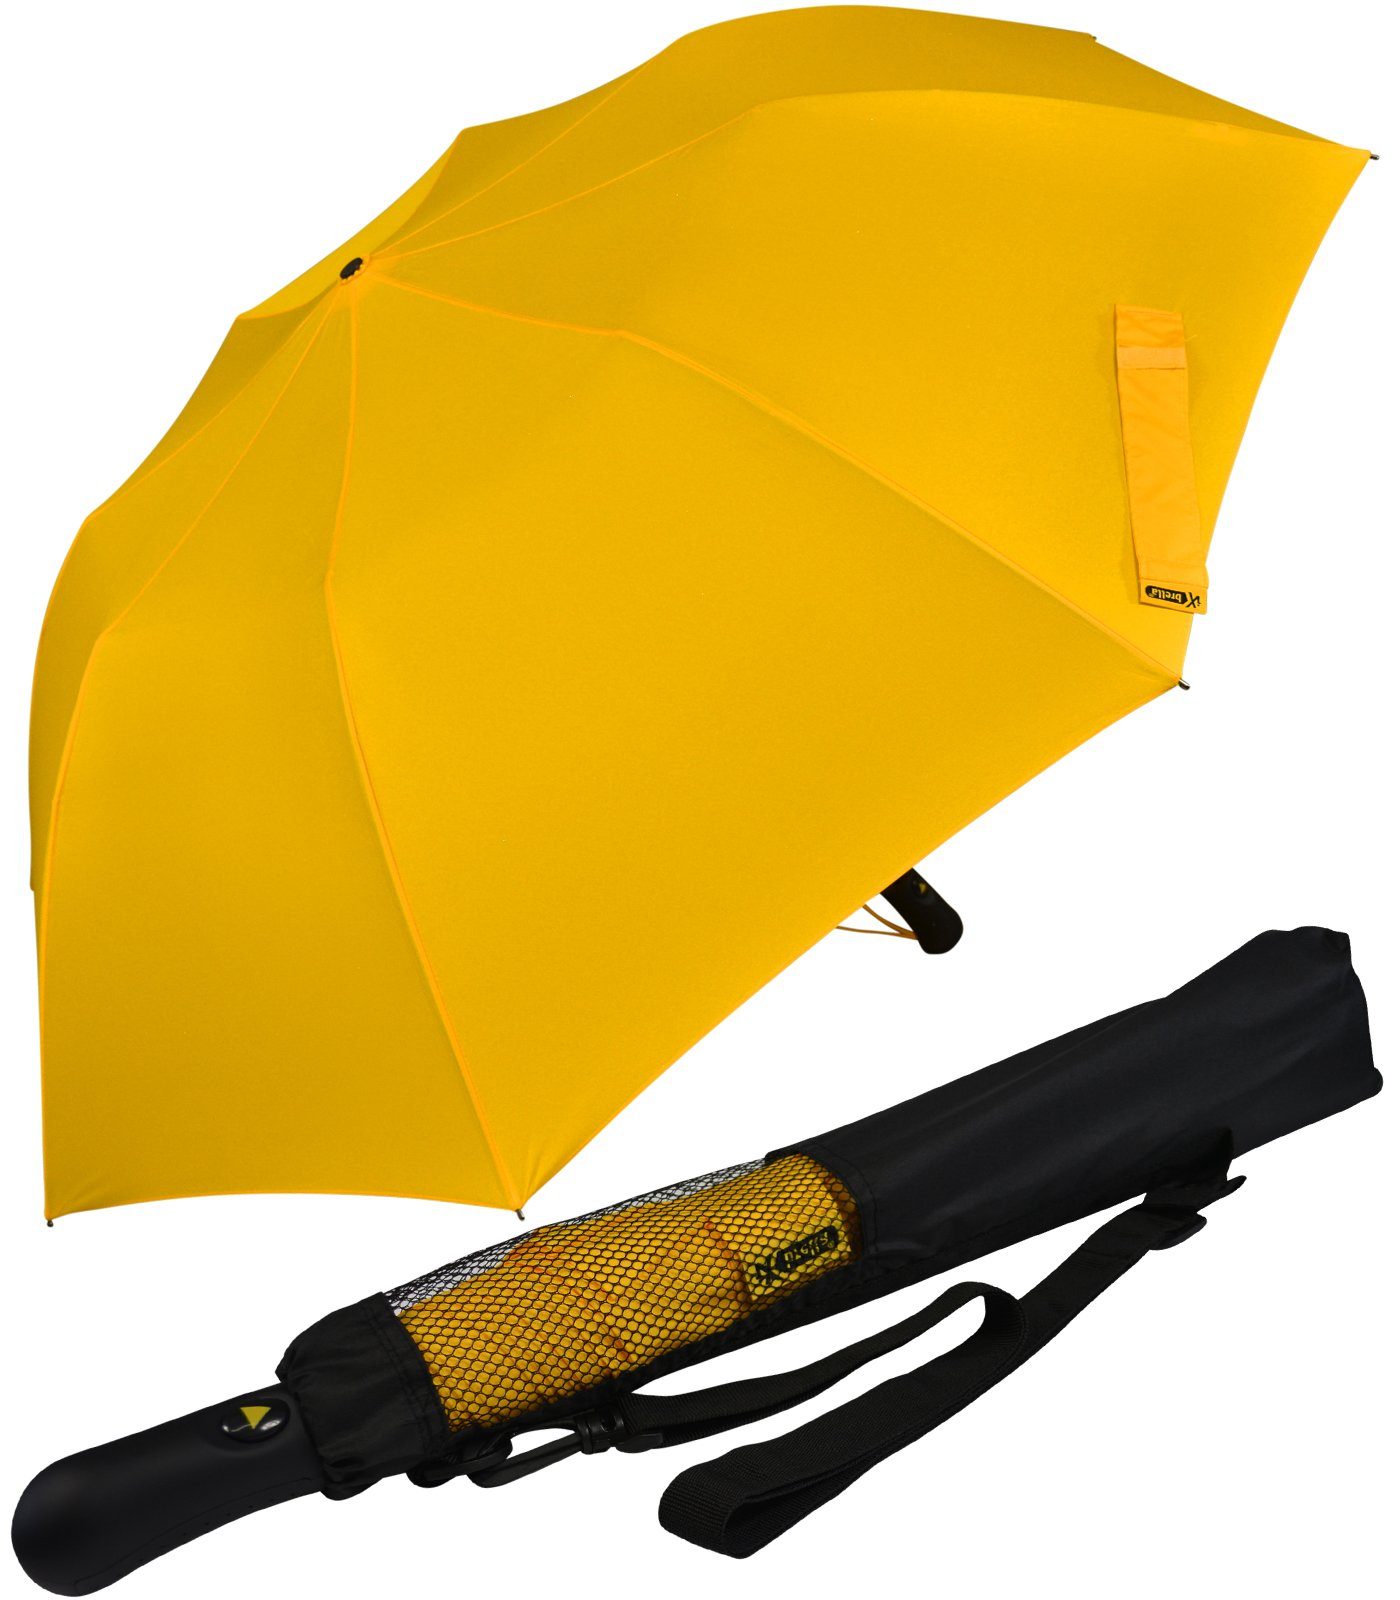 iX-brella Taschenregenschirm Trekking Golf-Taschenschirm XXL mit Umhängetasche, mit riesigem 124cm Dach-Durchmesser gelb